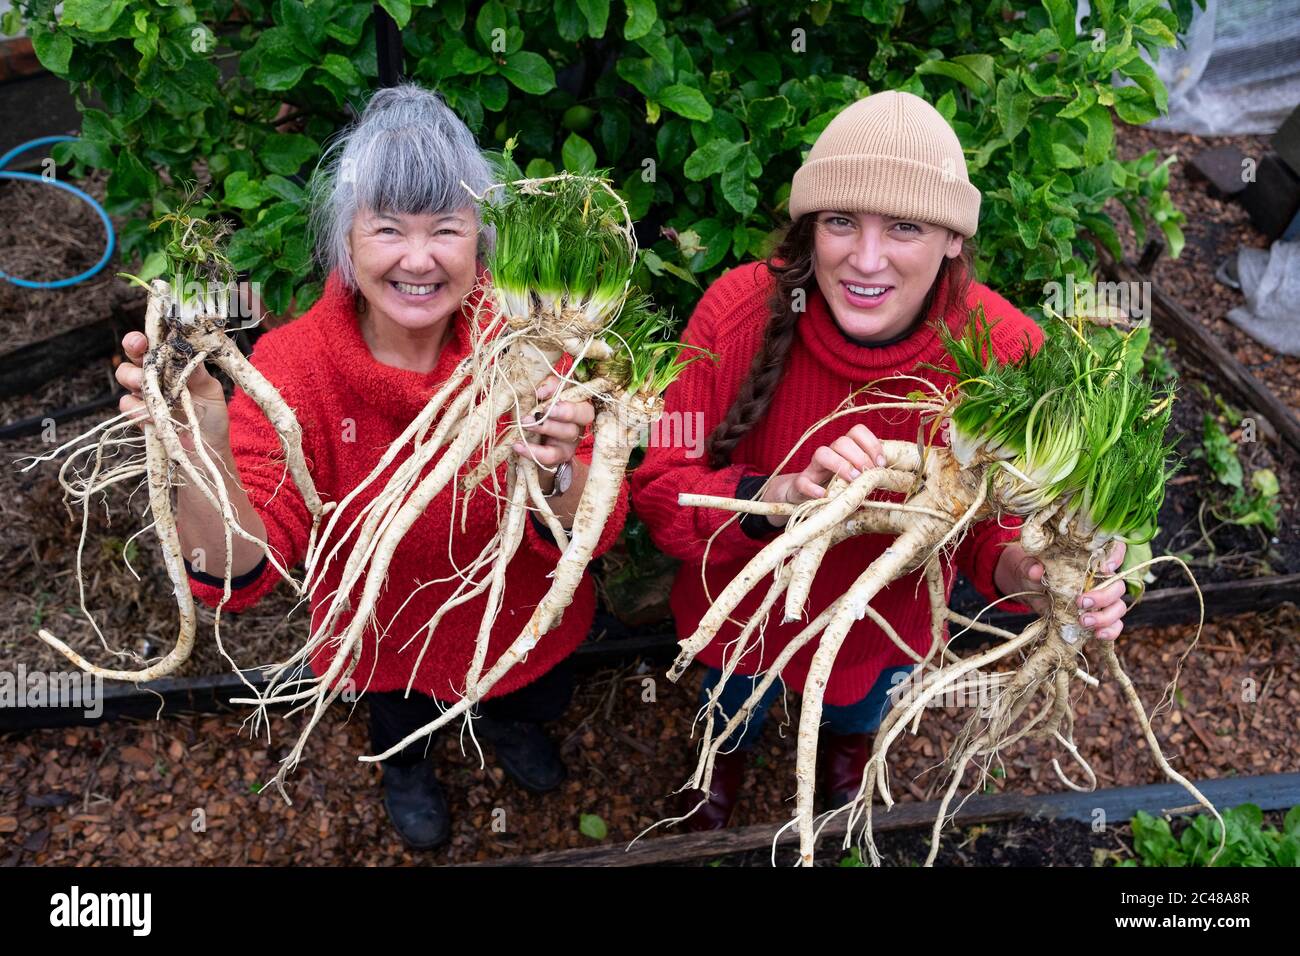 Deux agricultrices biologiques portant des chandails rouges récoltant une récolte de raifort Banque D'Images